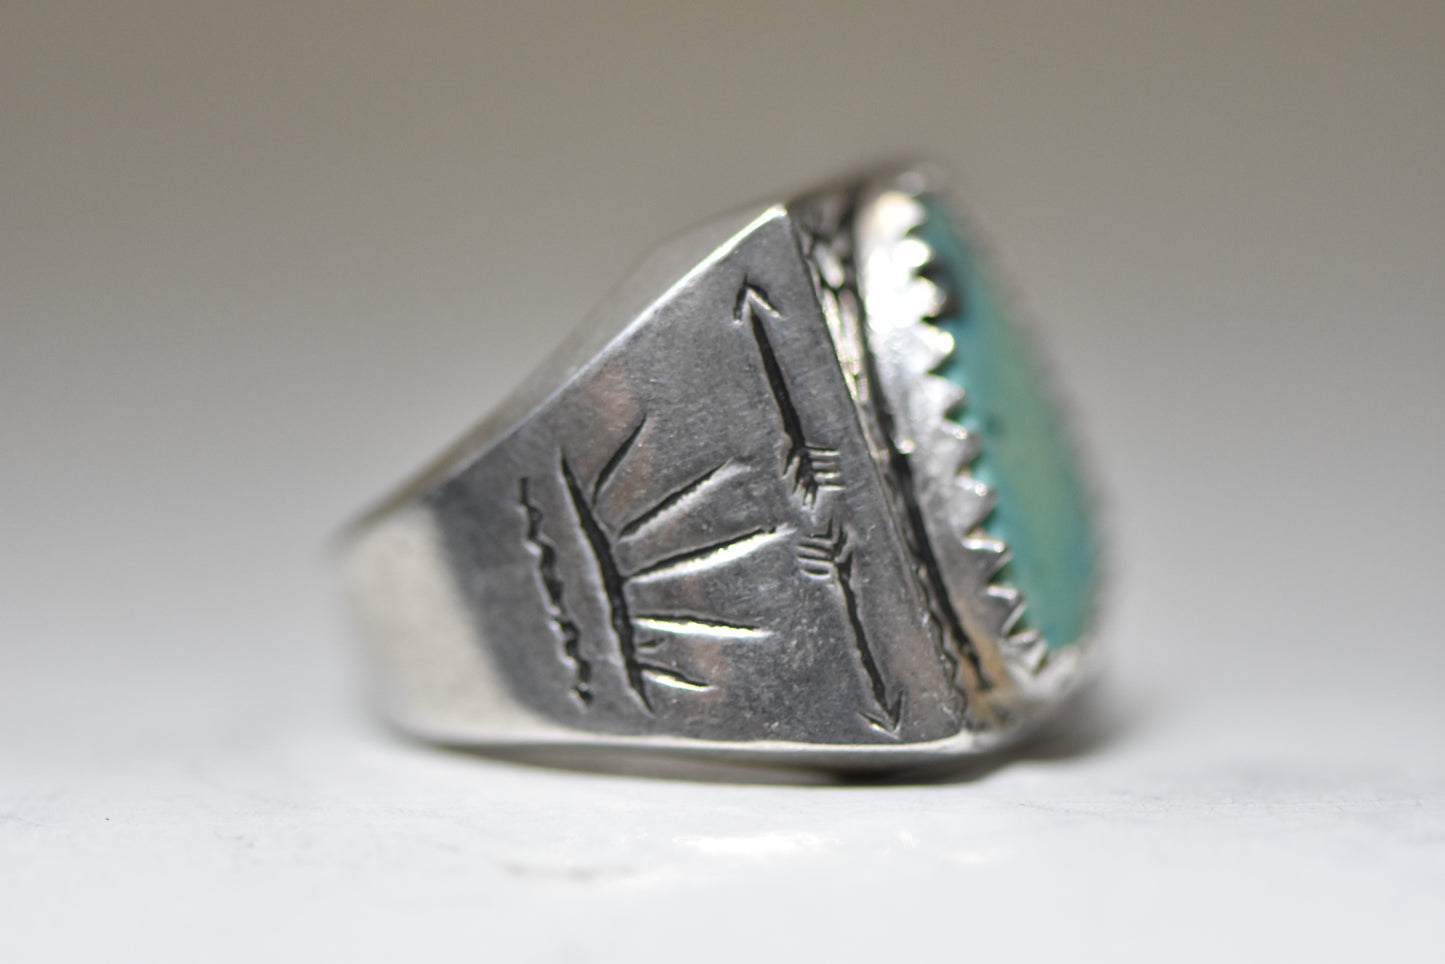 Turquoise ring Navajo southwest sun arrows sterling silver women men